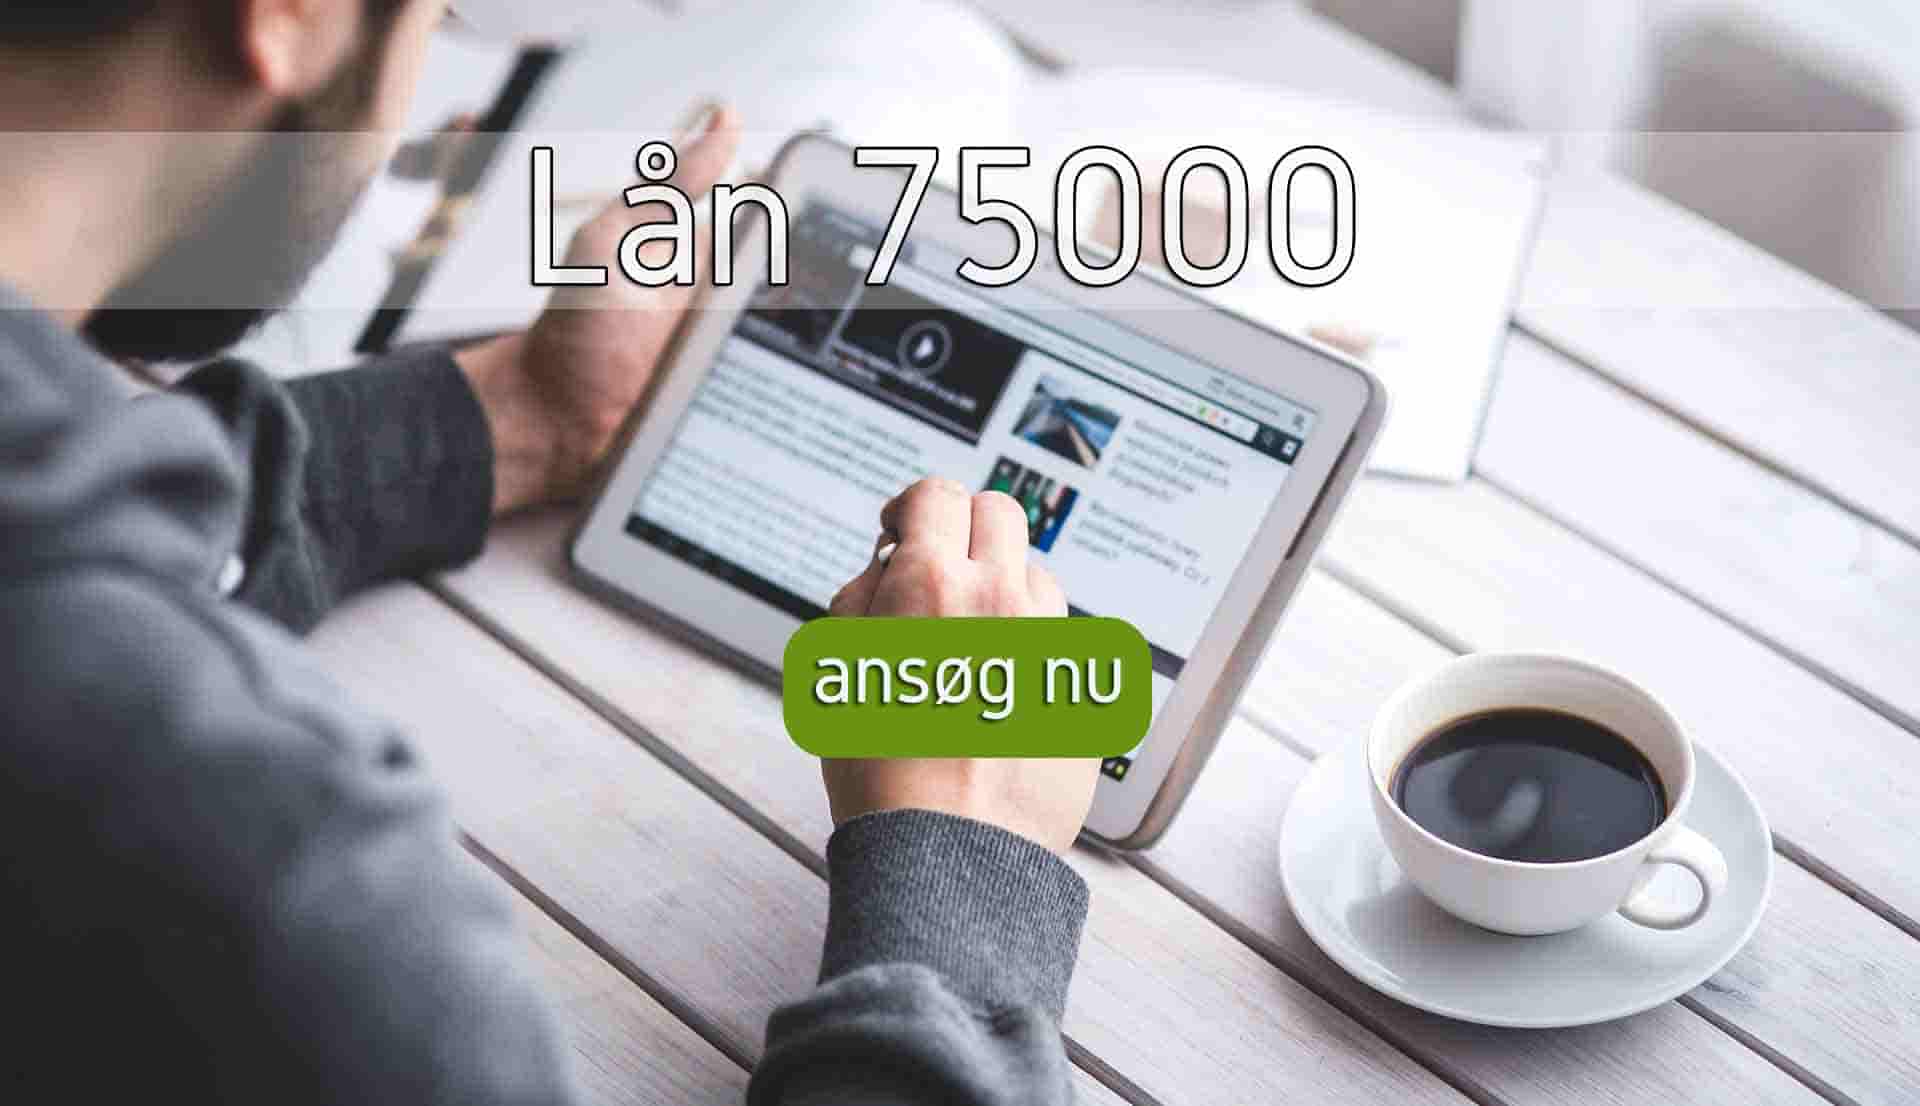 s3 Lån 75000